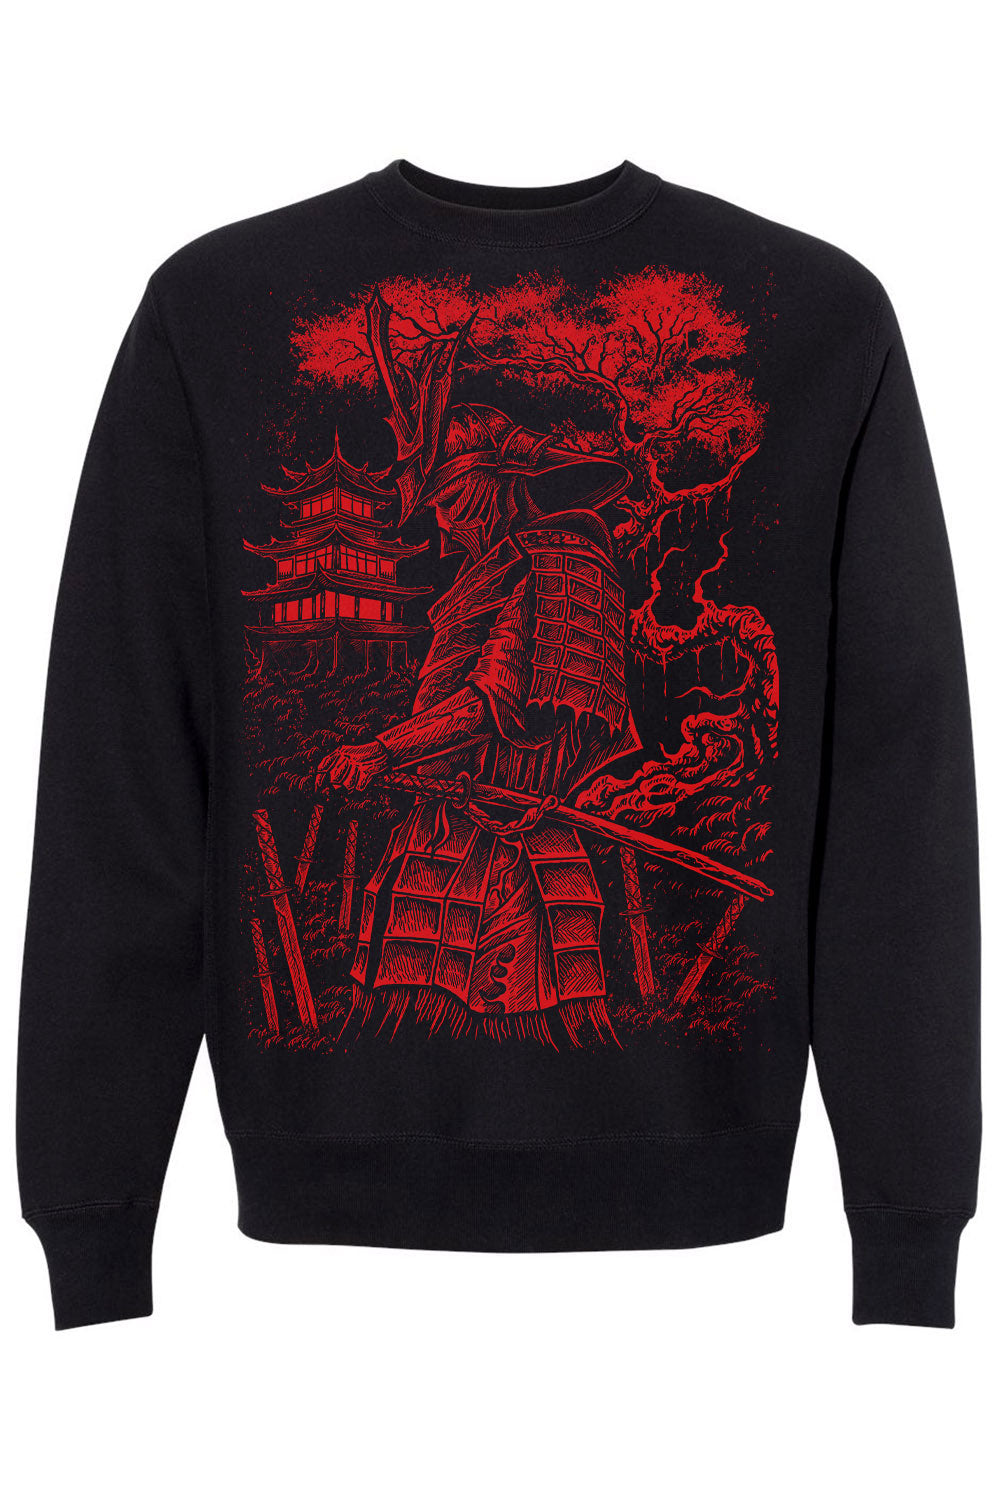 Samurai Warrior Sweatshirt [BLOOD RED]